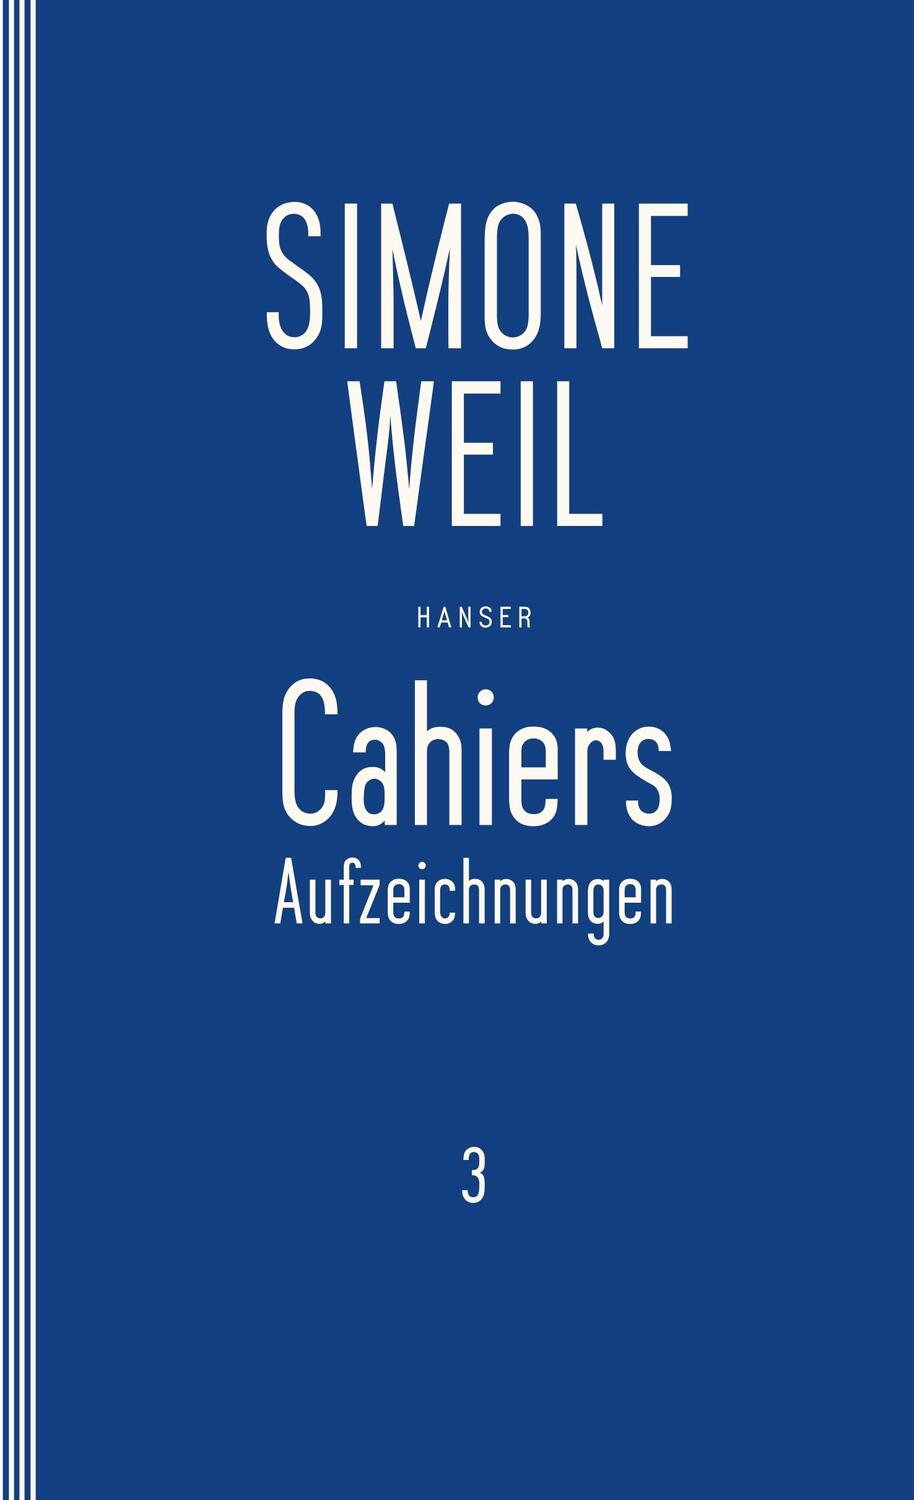 Cahiers 3 - Weil, Simone